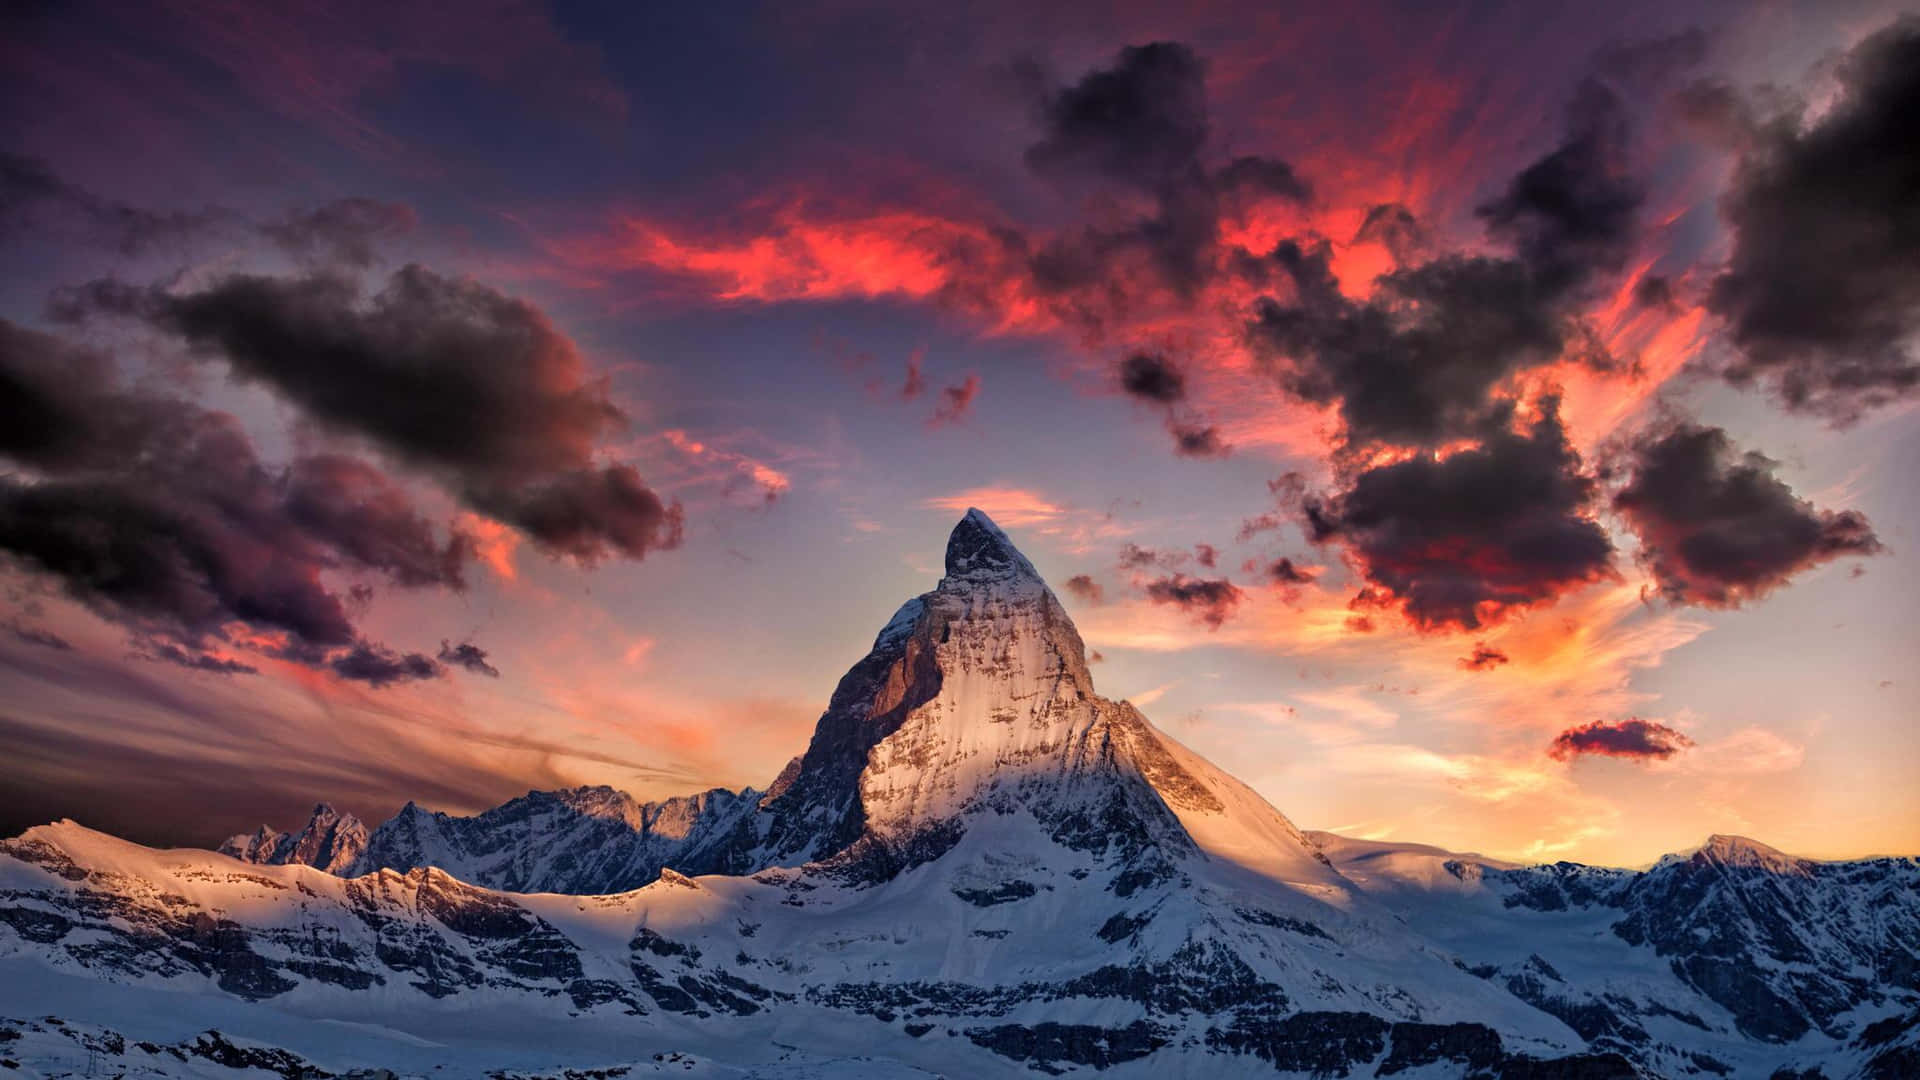 Matterhorn 2048 X 1152 Wallpaper